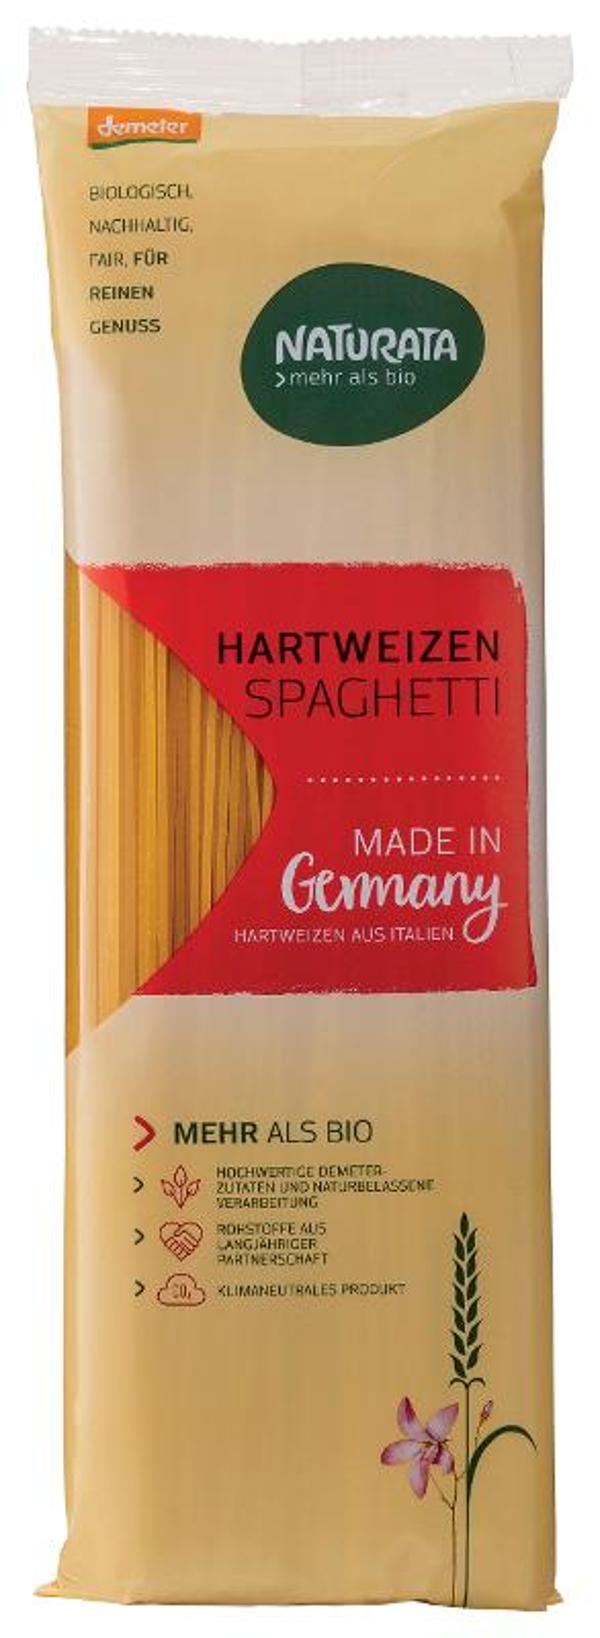 Produktfoto zu Hartweizen Spaghetti, 500 g